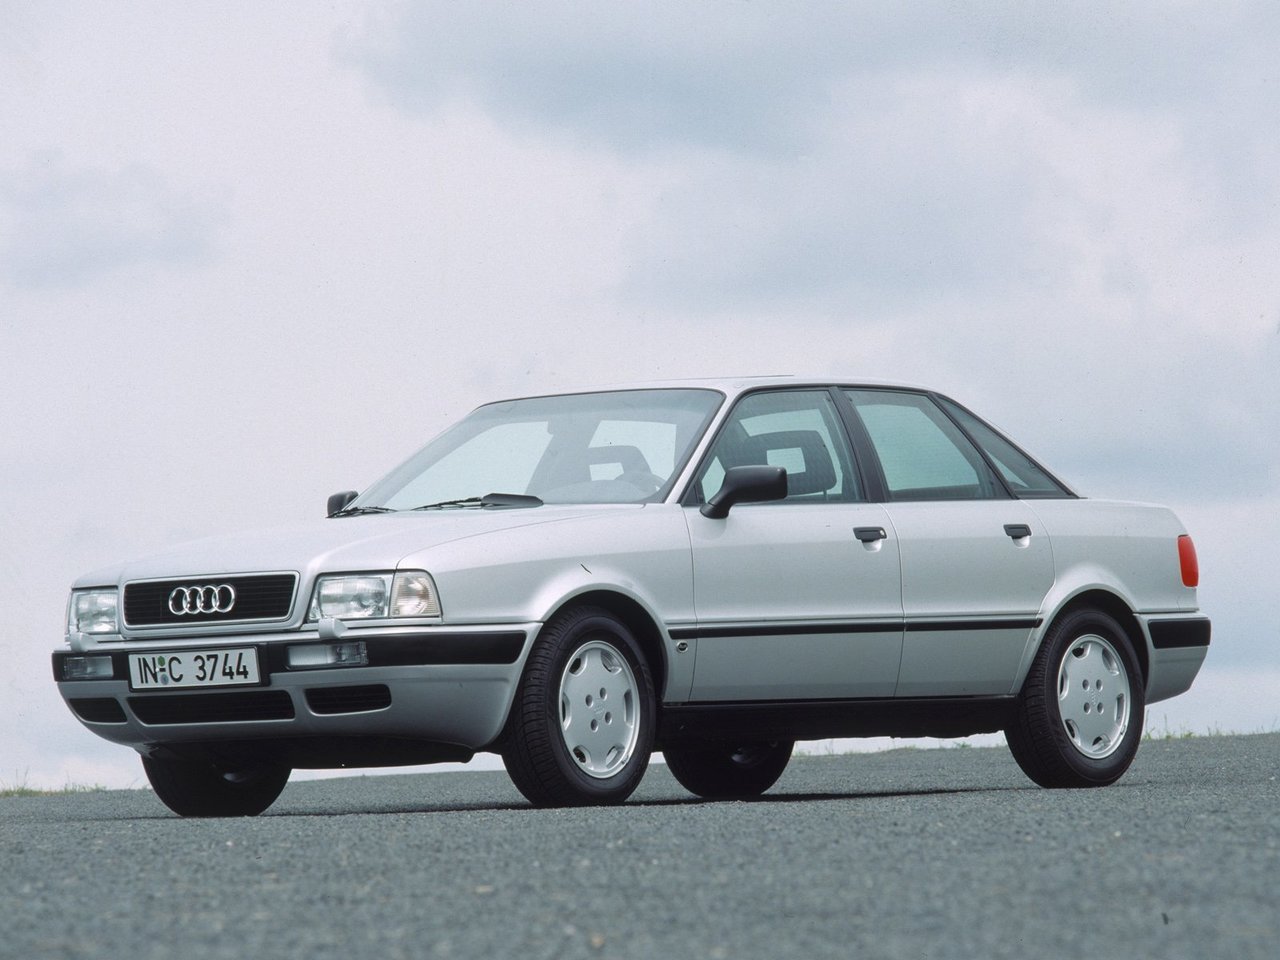 Расход газа двенадцати комплектаций седана Audi 80. Разница стоимости заправки газом и бензином. Автономный пробег до и после установки ГБО.